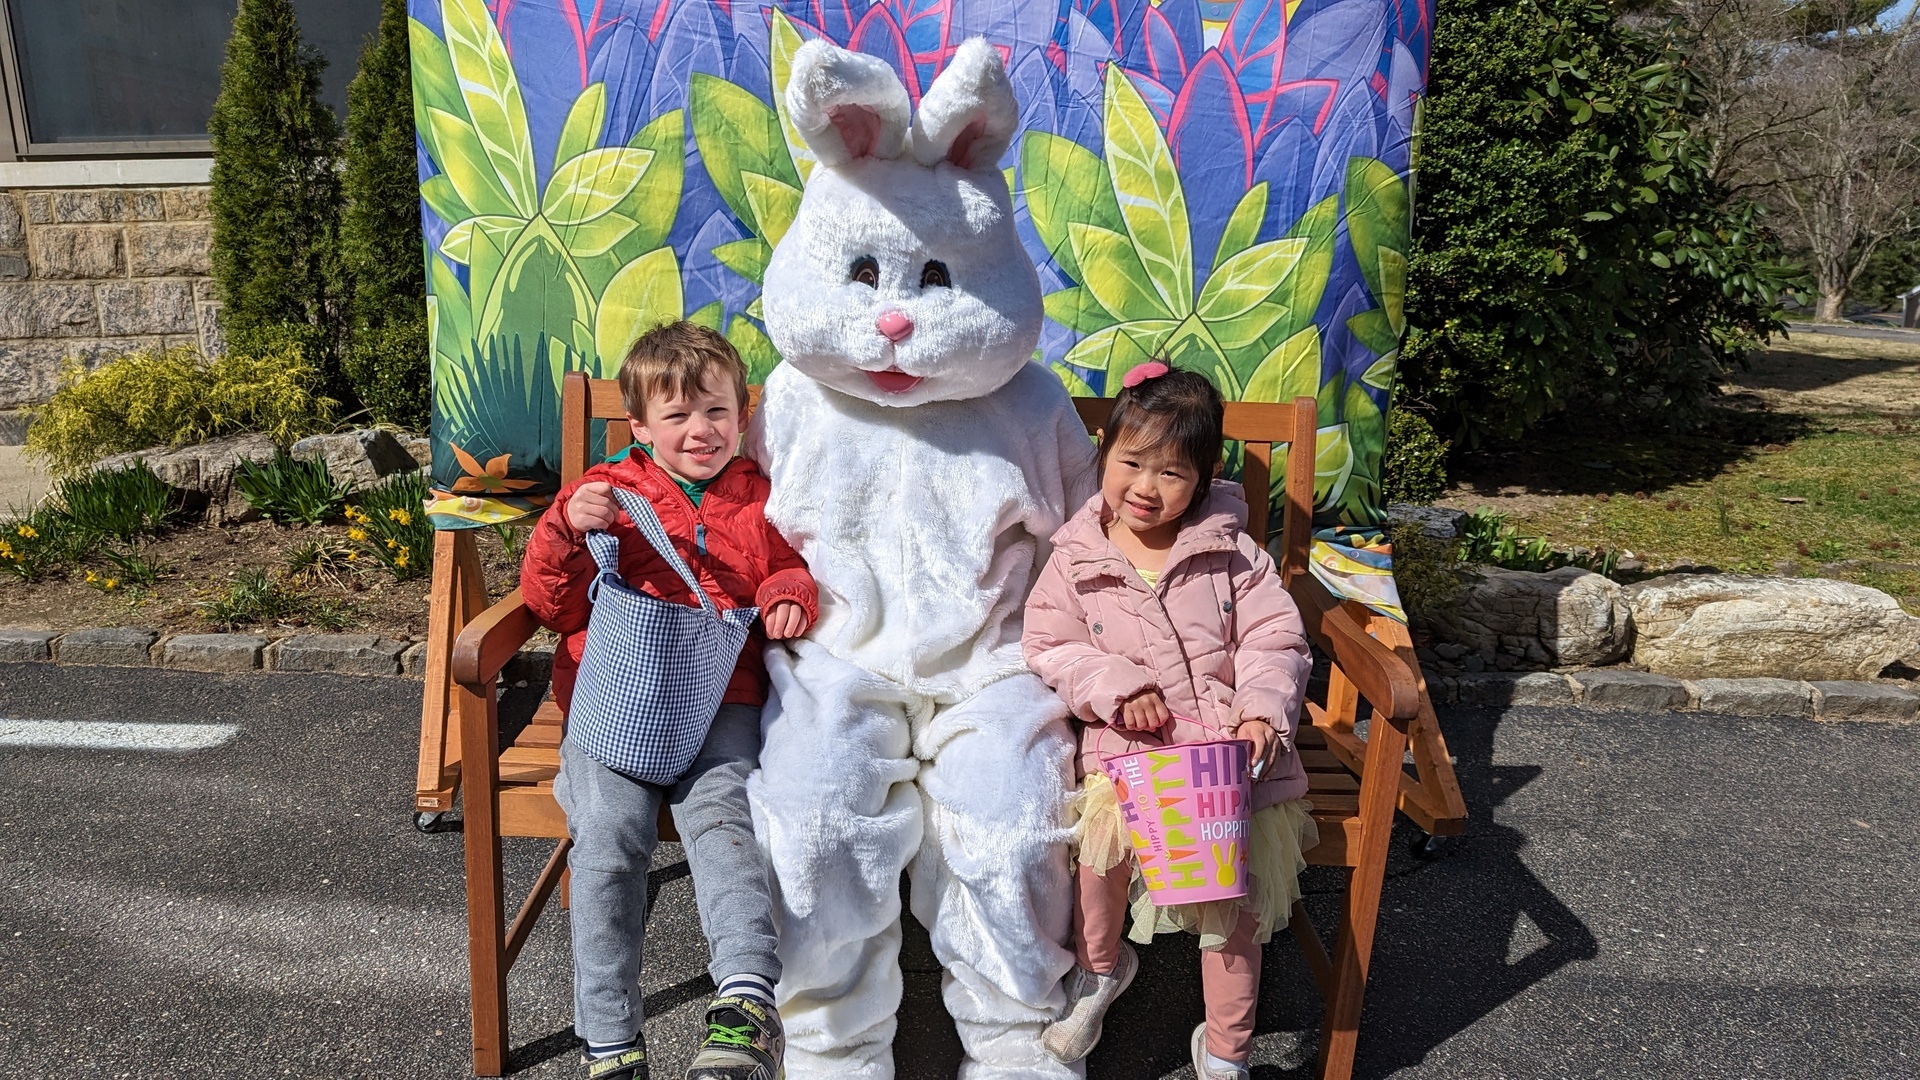 Easter Egg Hunt + Children's Party, Manhasset, New York, United States